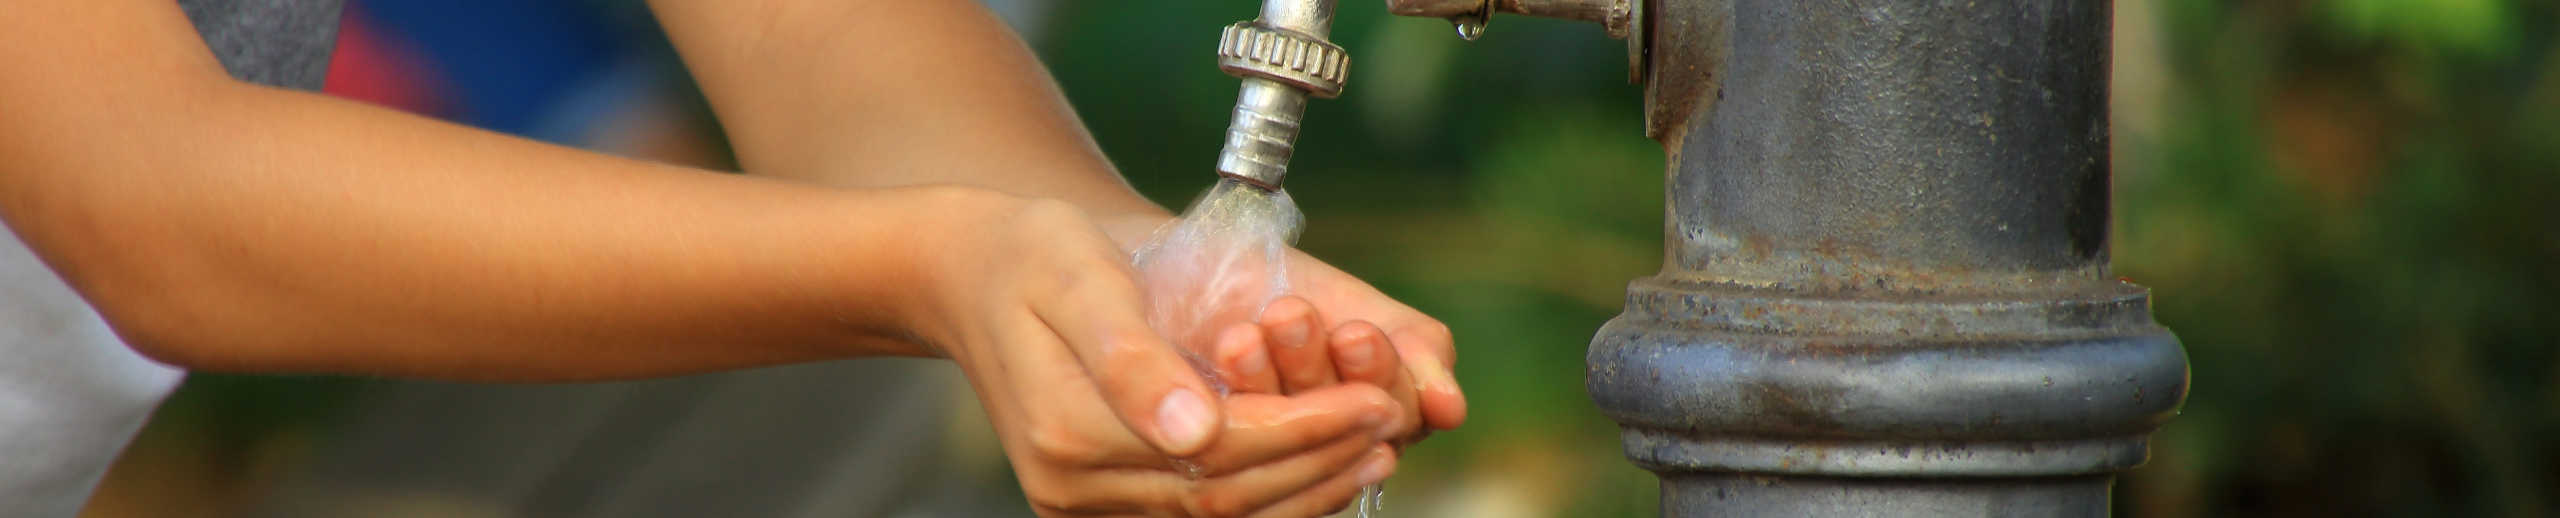 Kind sammelt mit seinen Händen Wasser